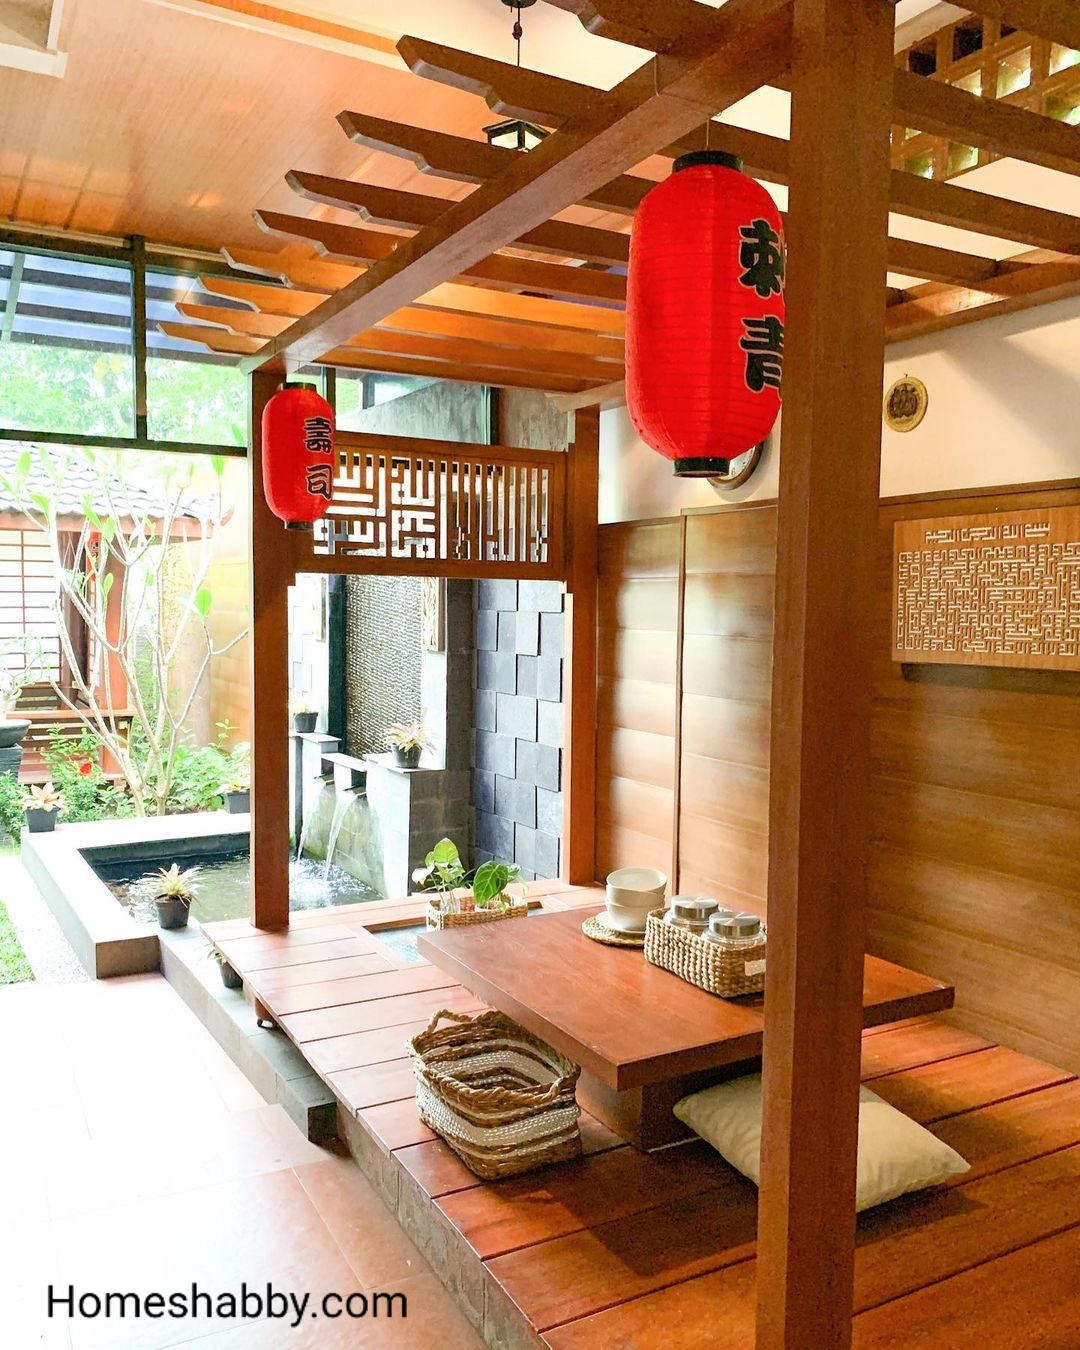 6 Populer Desain Ruang Makan Di Teras Belakang Yang Sejuk Homeshabbycom Design Home Plans